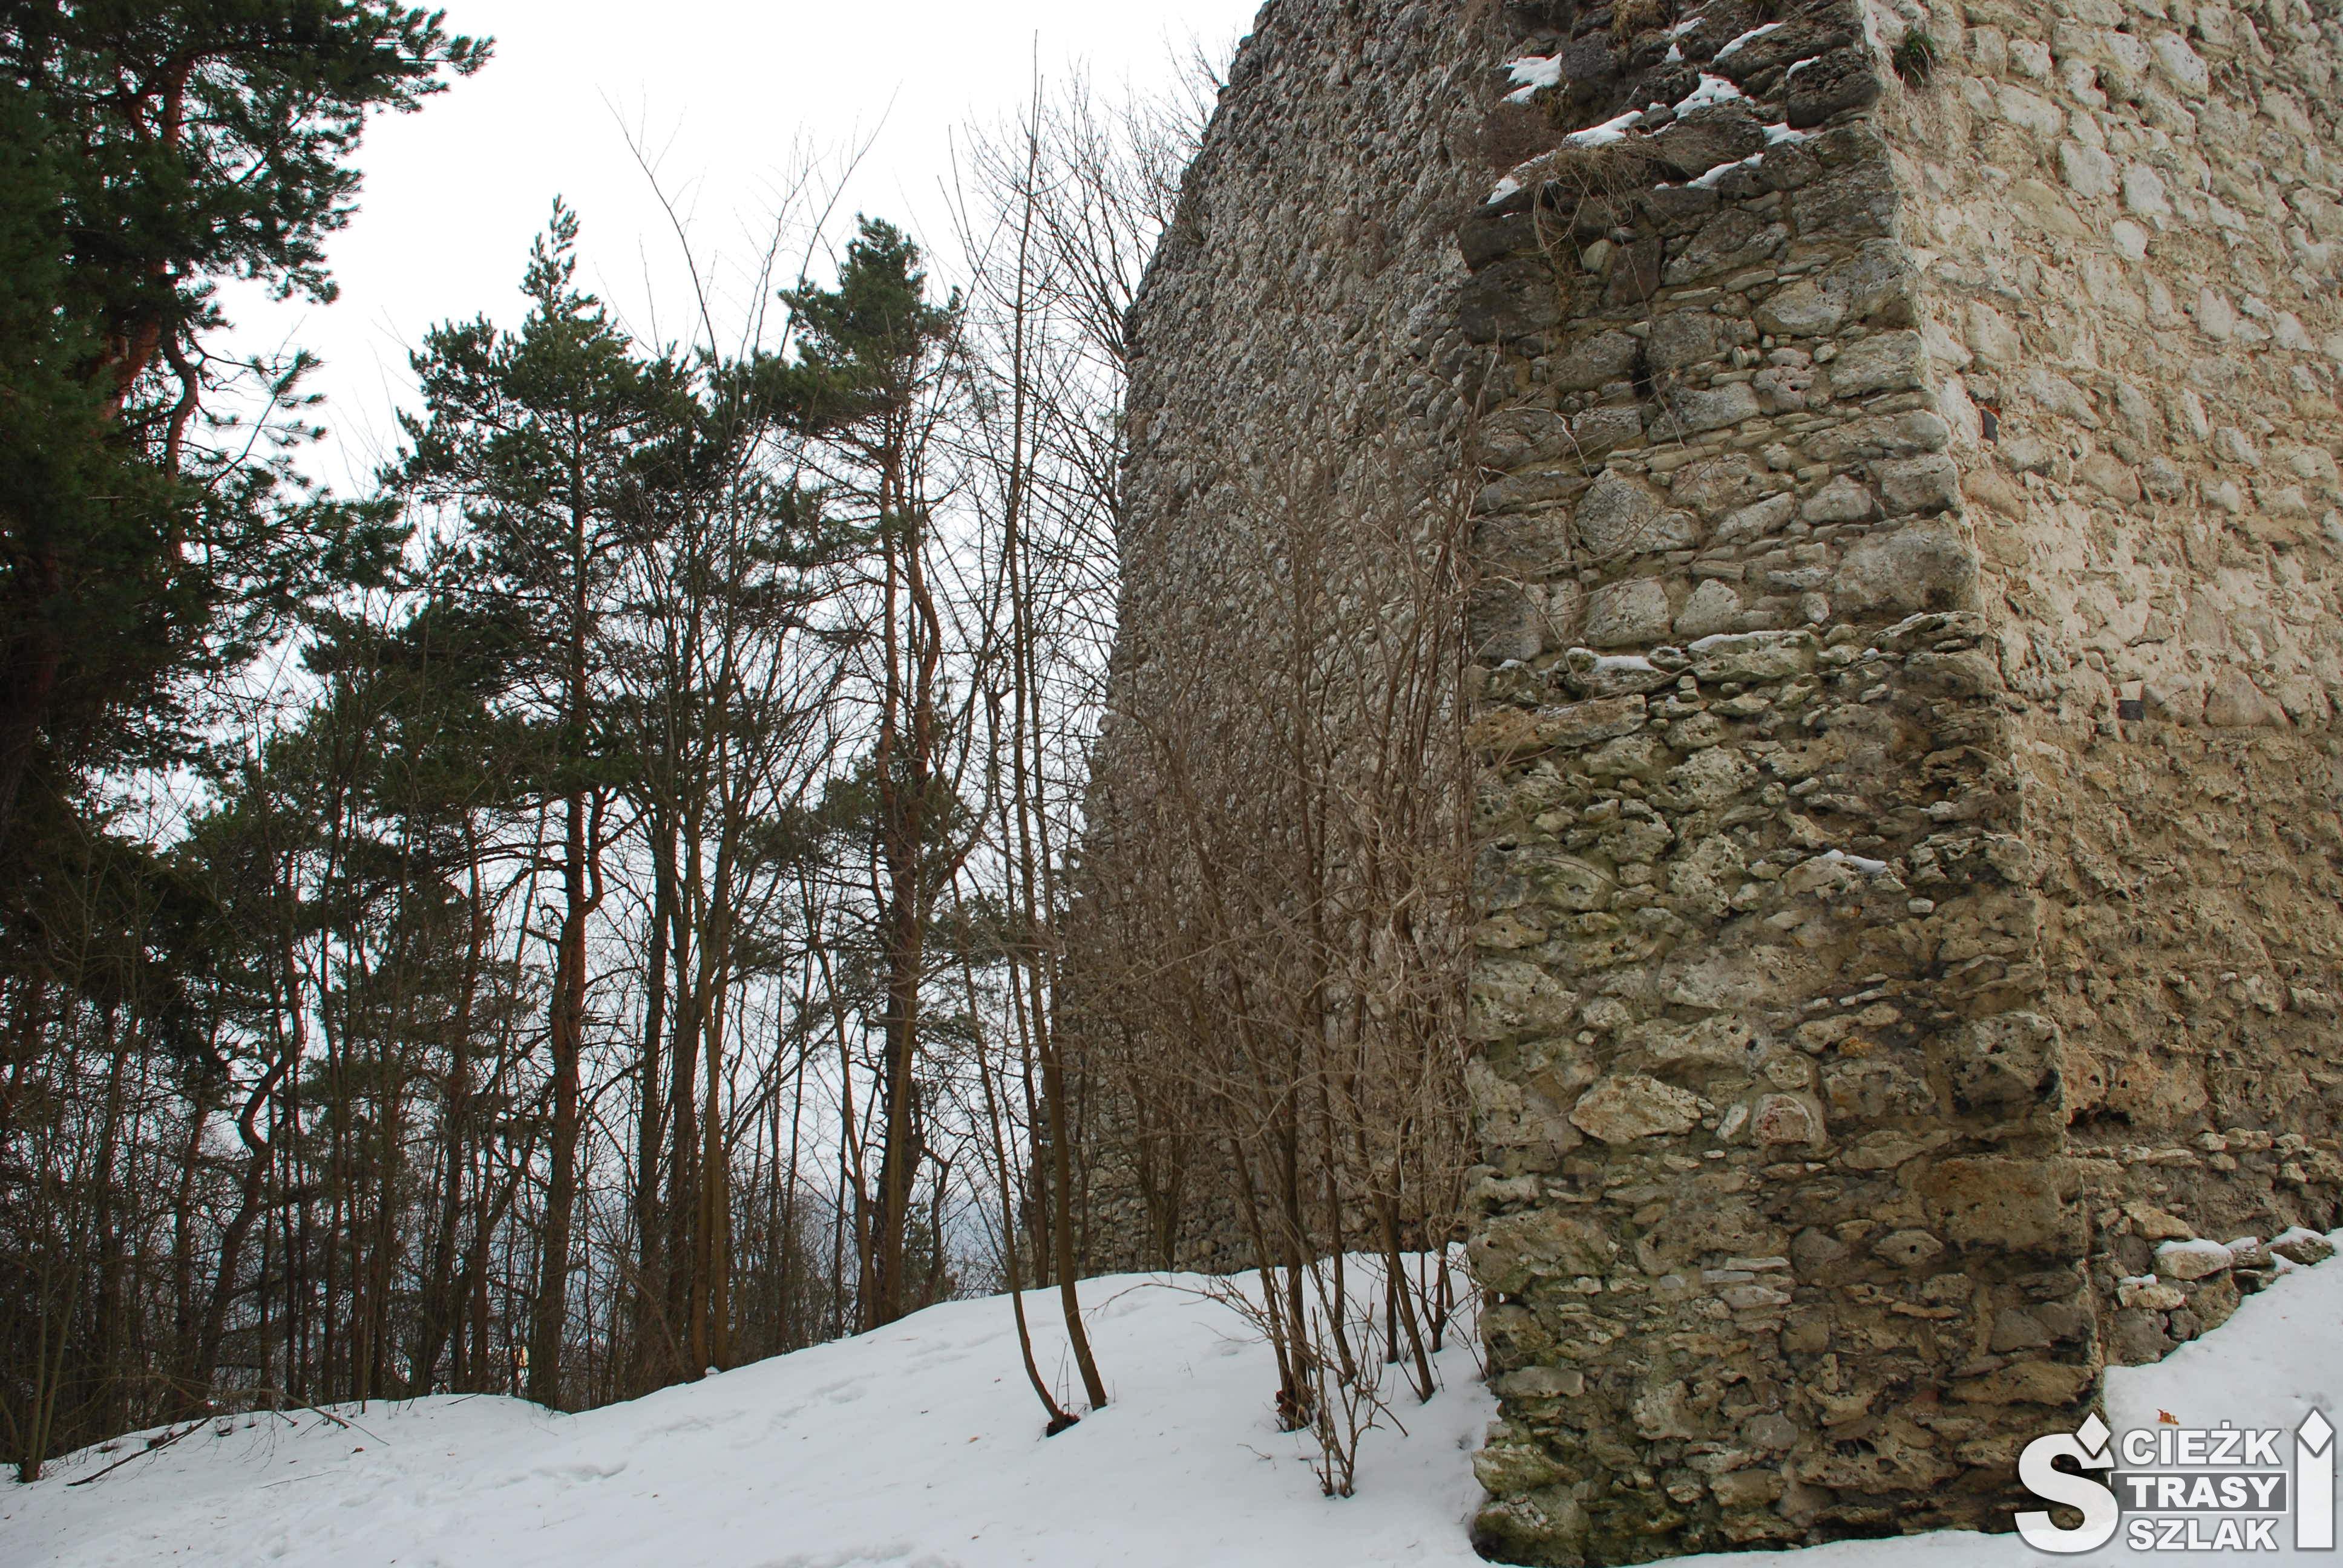 Wysokie mury obronne zamku w Bydlinie na wzgórzu skalnym pokrytym śniegiem